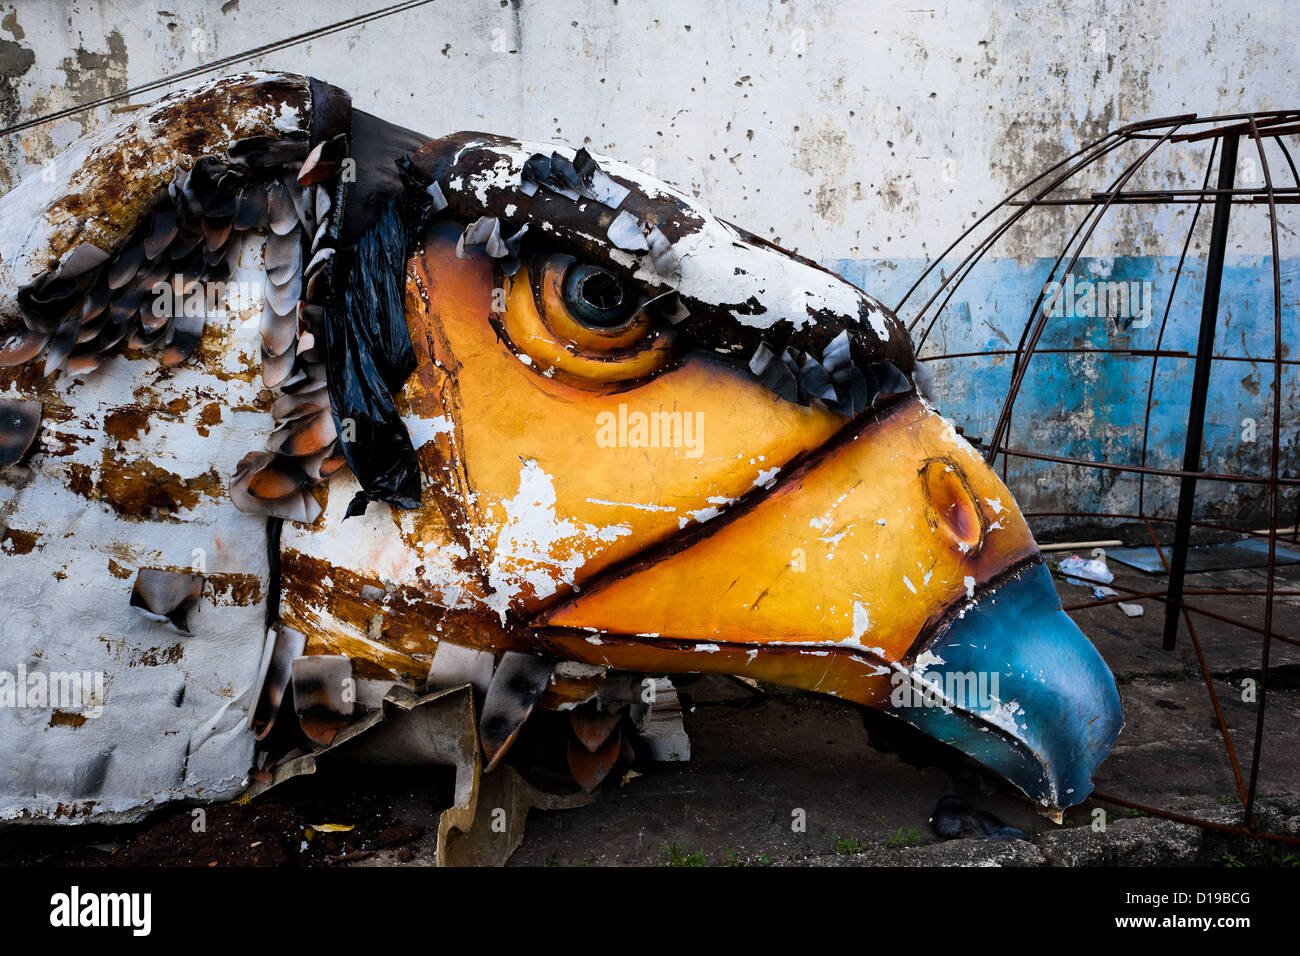 Une sculpture de carnaval endommagé un oiseau abandonné sur le chantier de travail derrière les ateliers l'école de samba à Rio de Janeiro, au Brésil. Banque D'Images